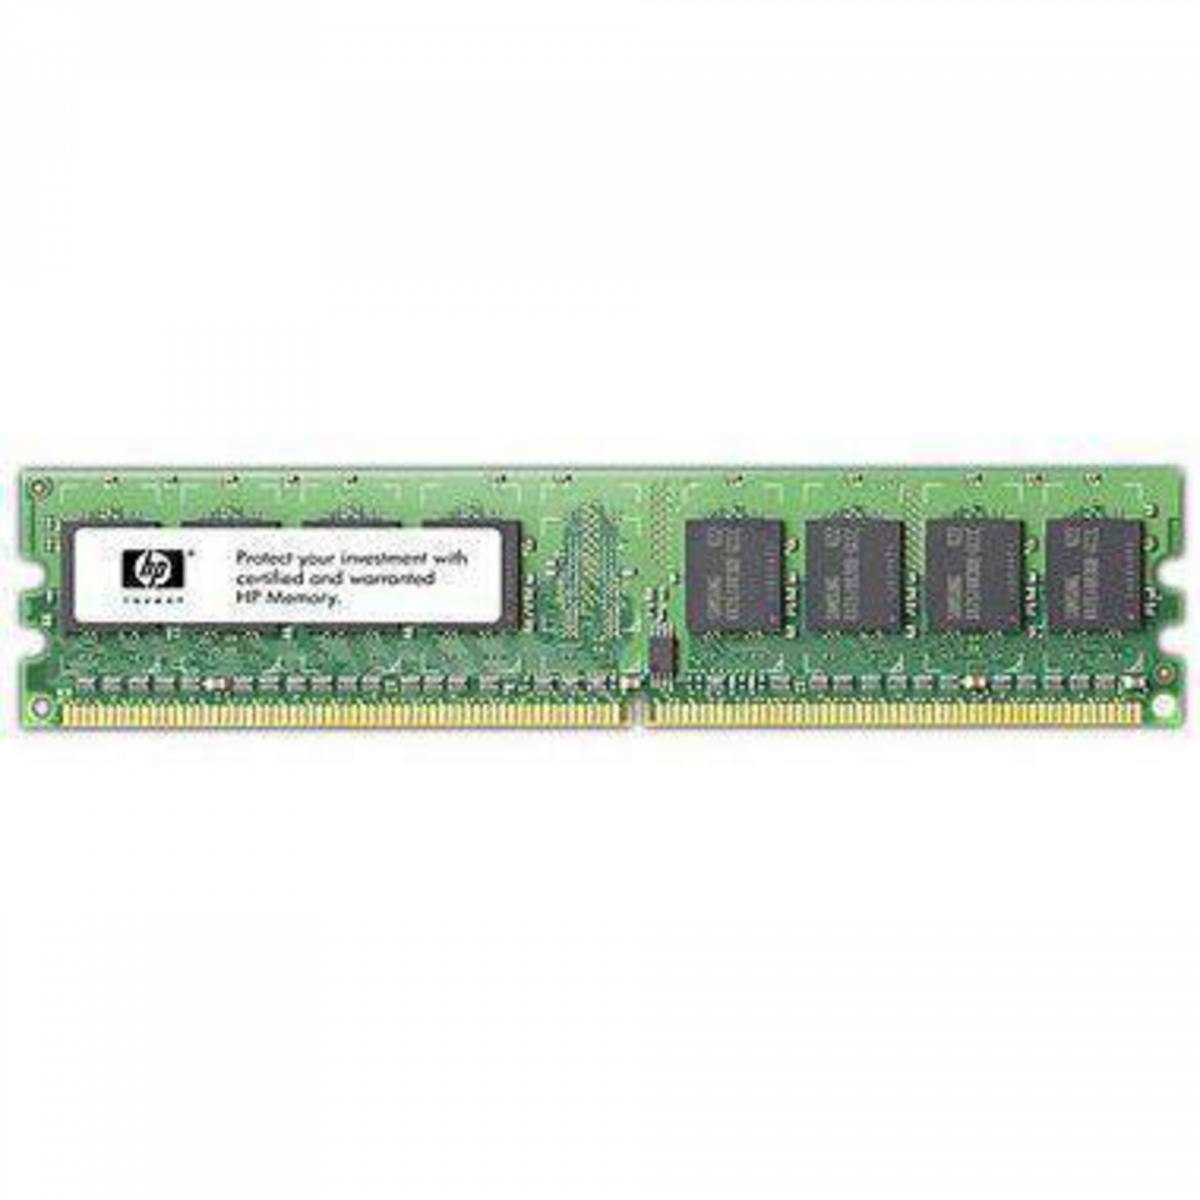 Память DDR PC3-10600R ECC Reg, 8GB